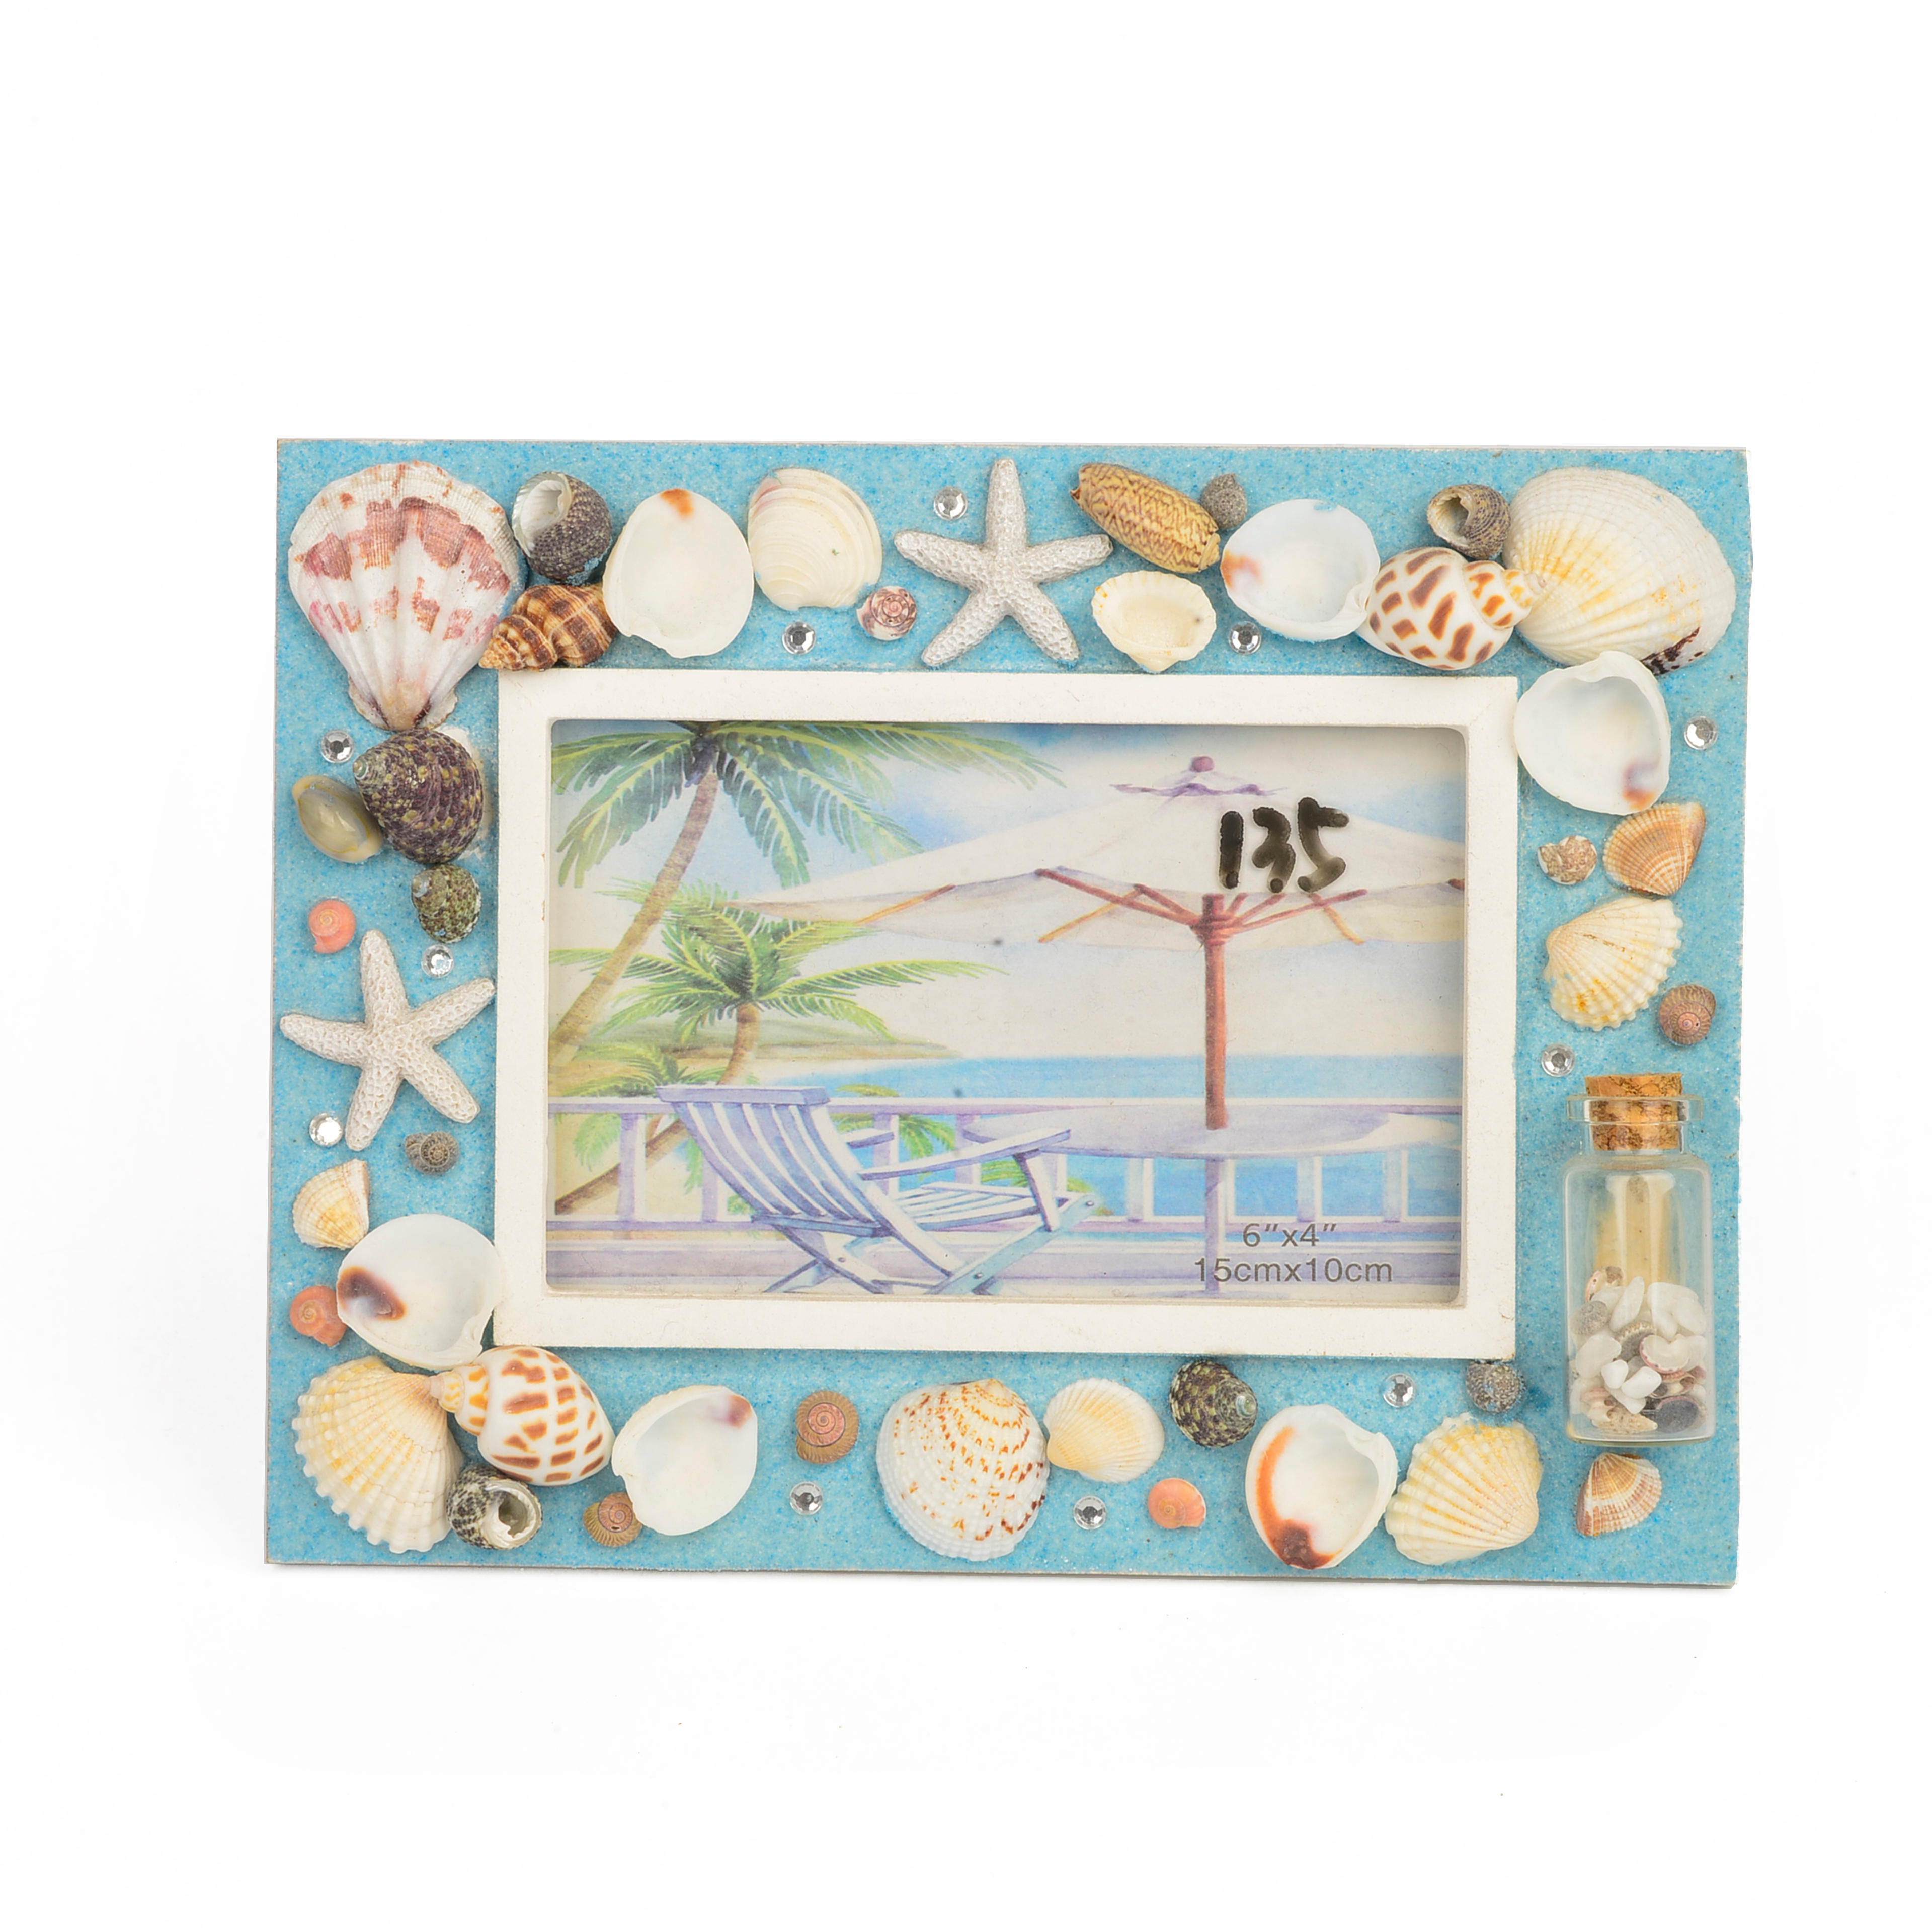 丽飞海洋系列旅游创意工艺品海滩贝壳海螺珊瑚工艺相框X0015